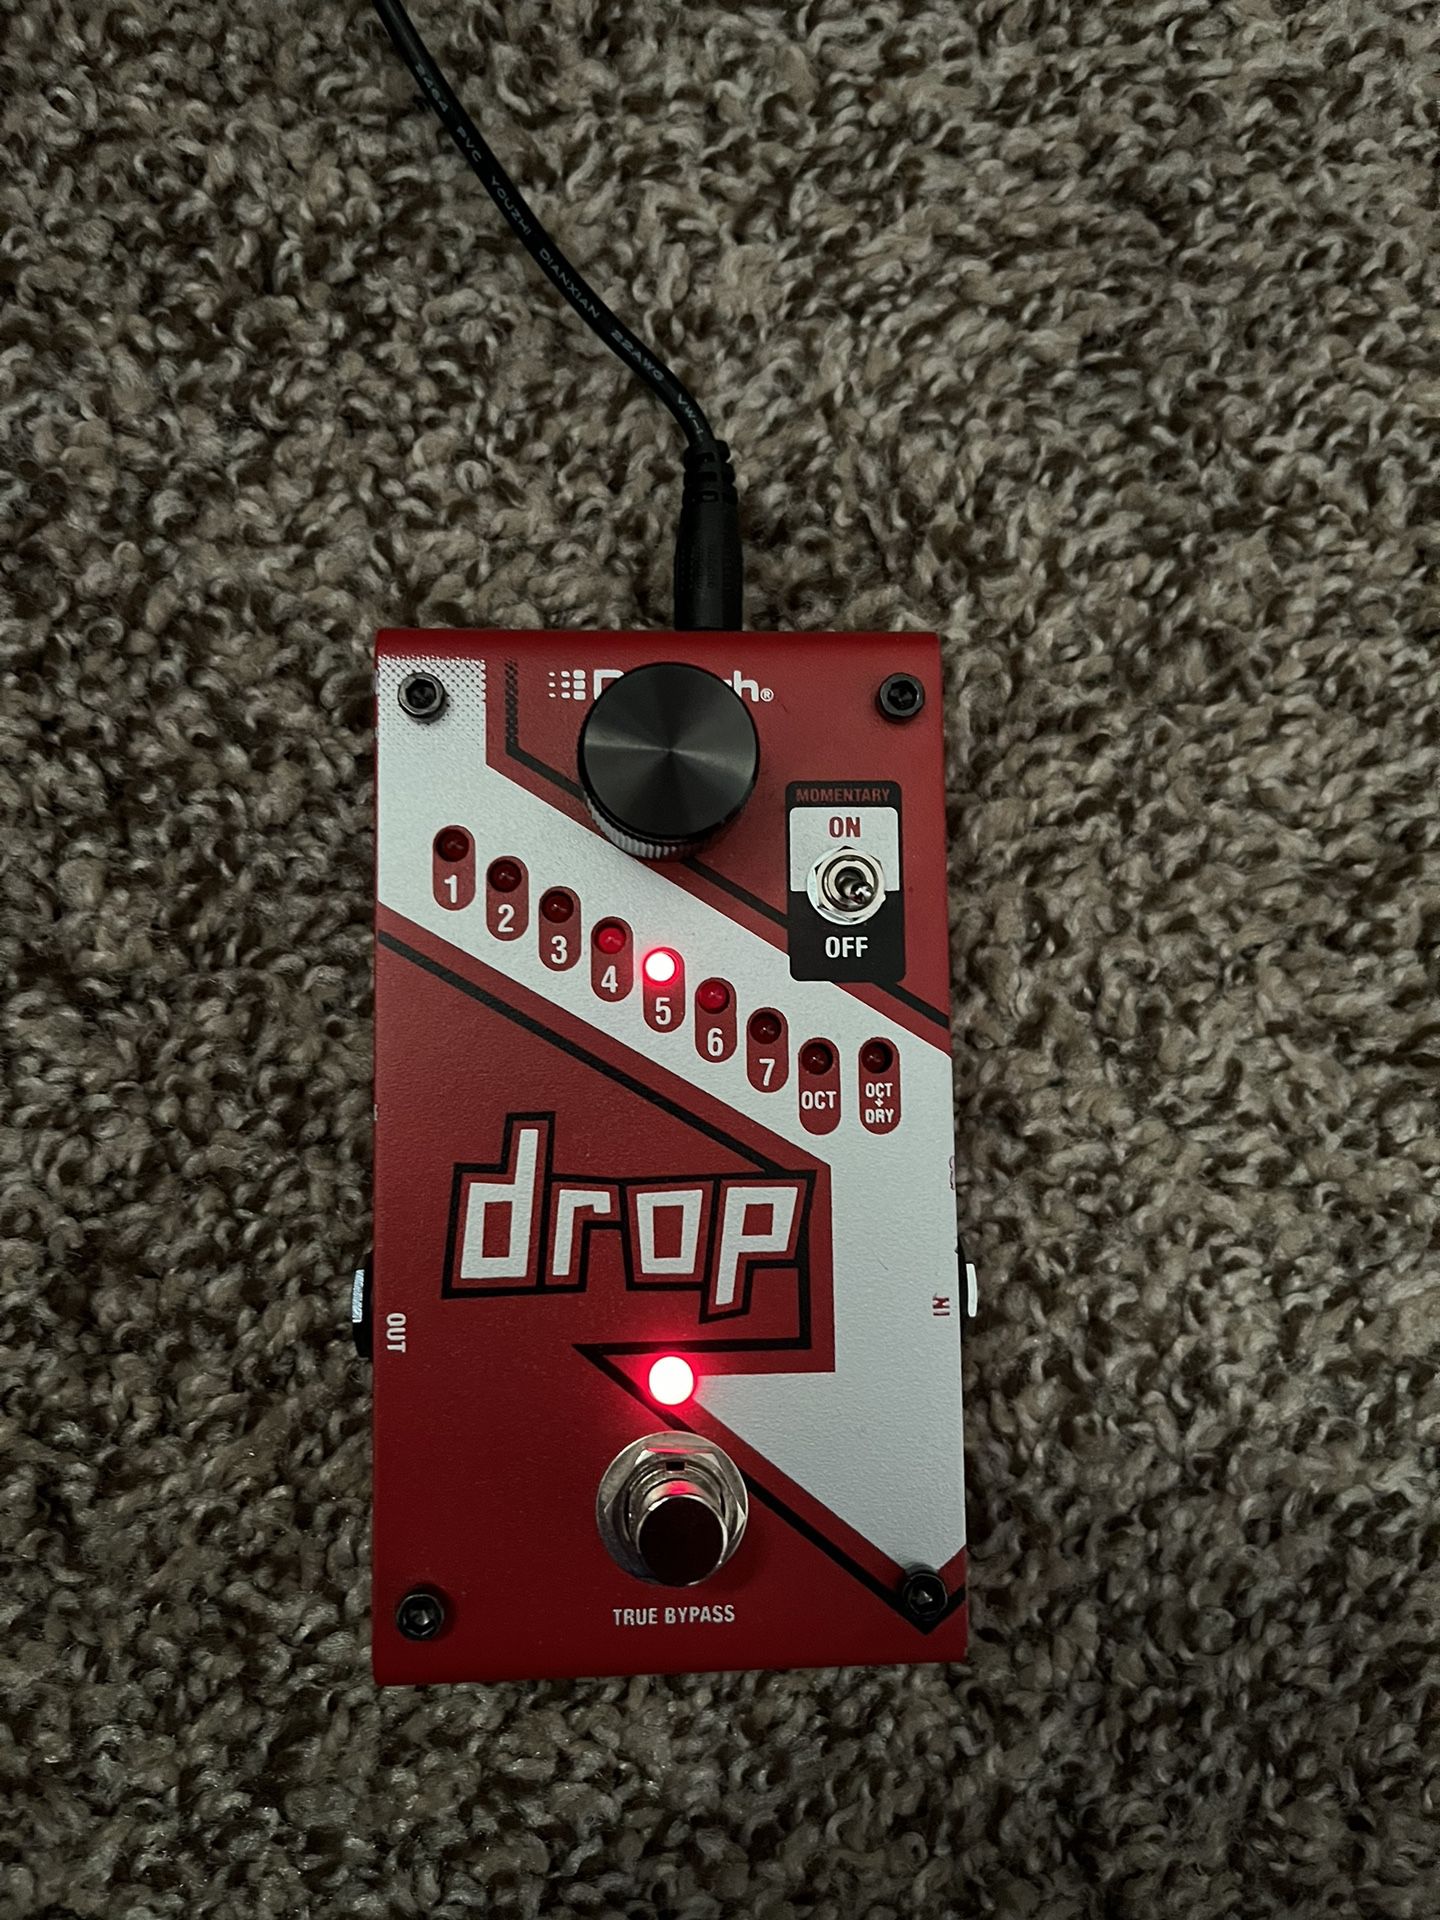 Digitech Drop  Guitar Pedal